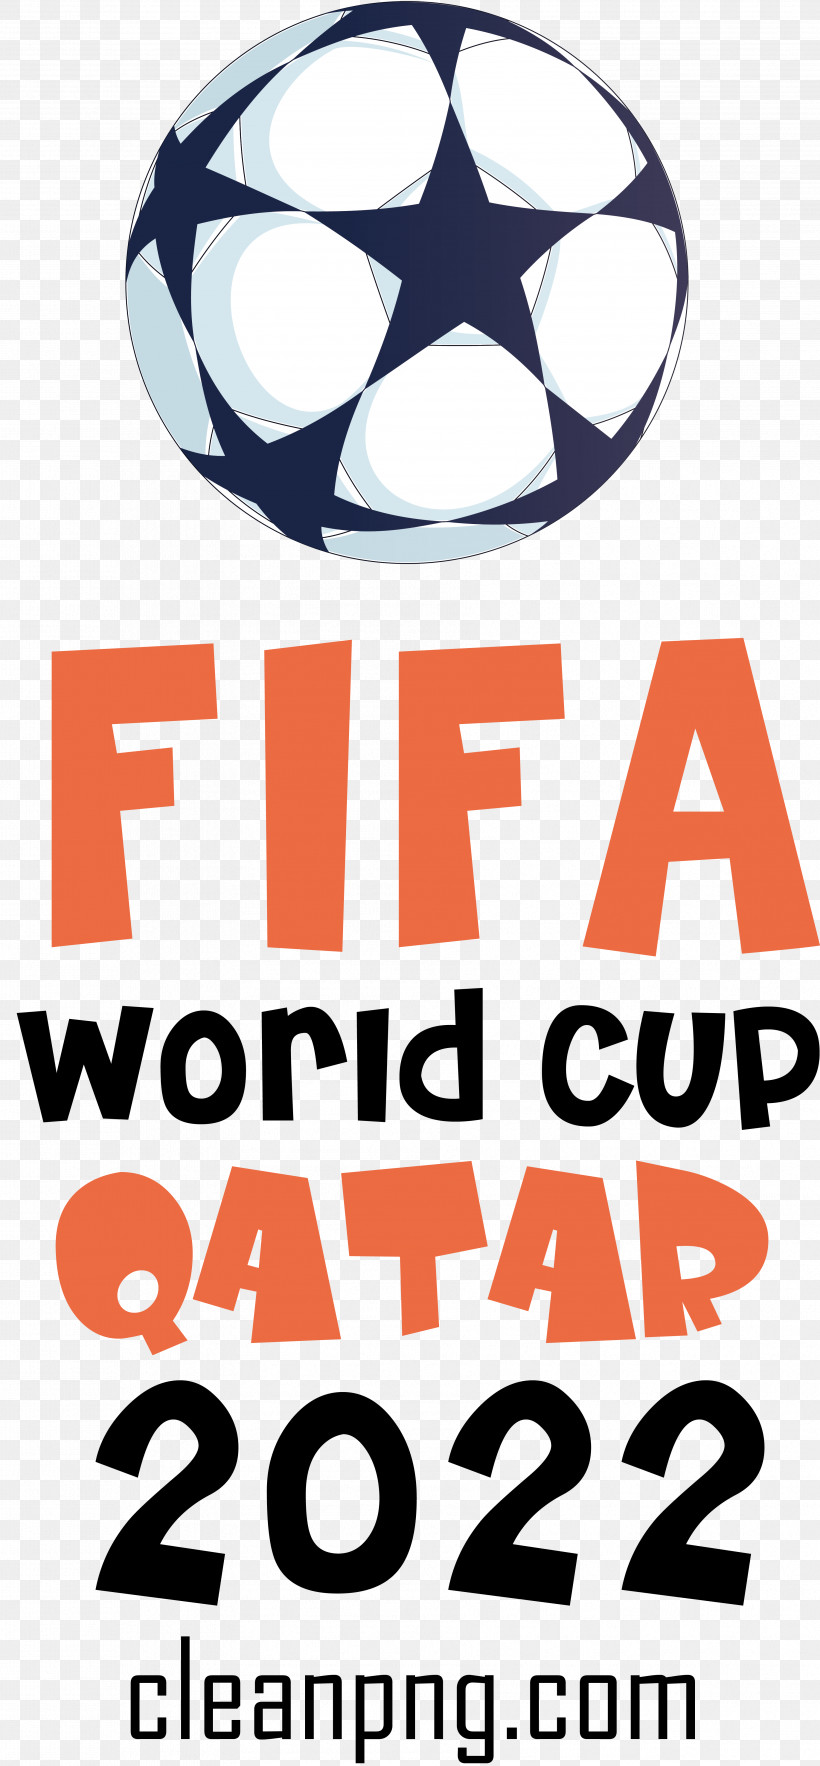 Fifa World Cup Qatar 2022 Fifa World Cup Qatar Football Soccer, PNG, 3562x7674px, Fifa World Cup Qatar 2022, Fifa World Cup, Football, Qatar, Soccer Download Free